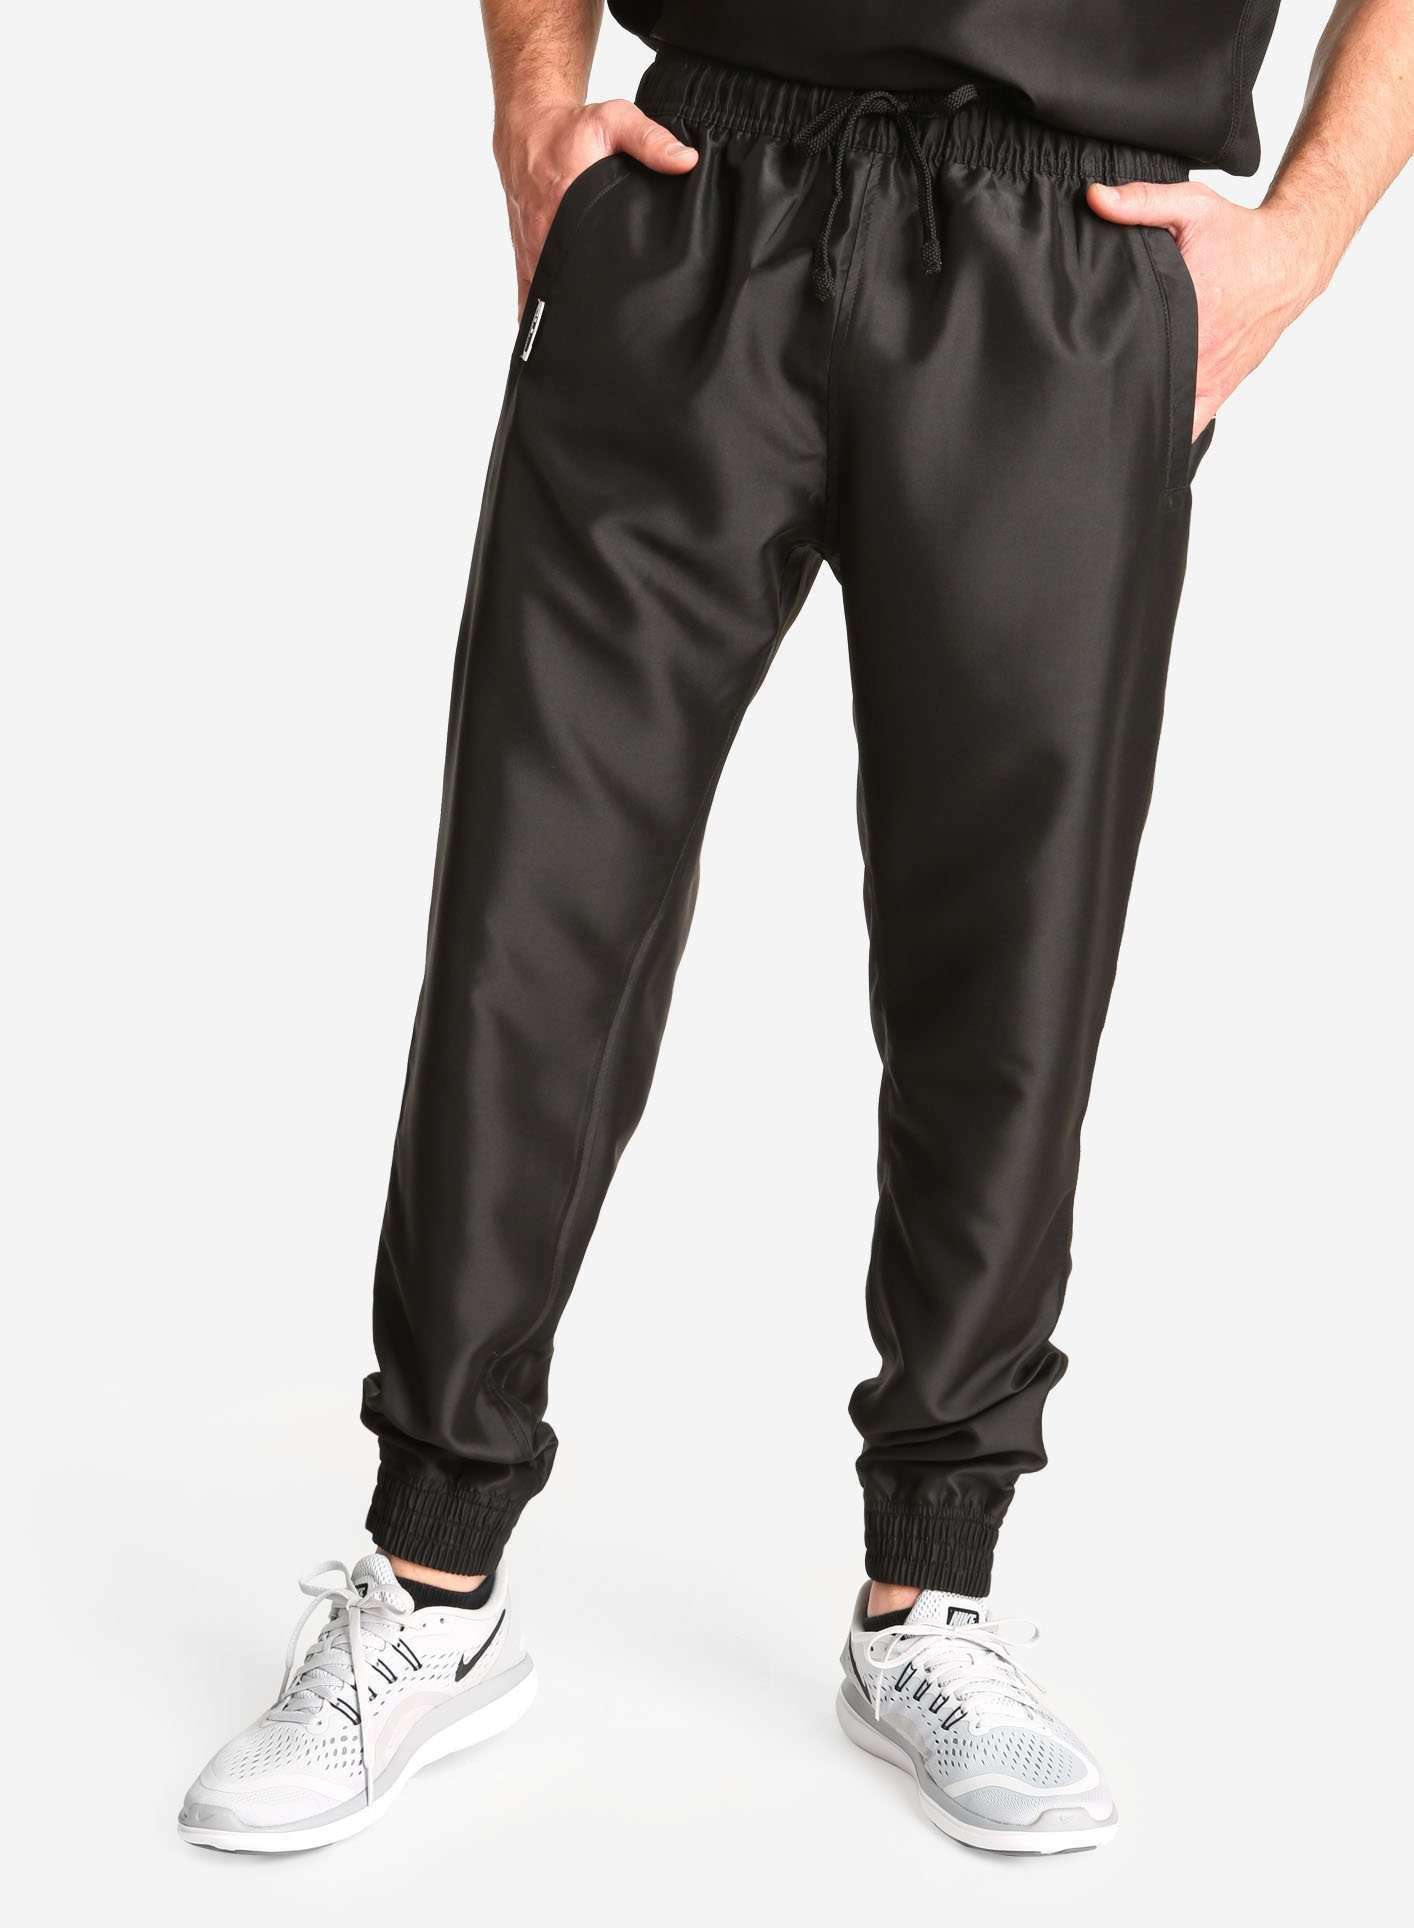 Men's Jogger Scrub Pants in black